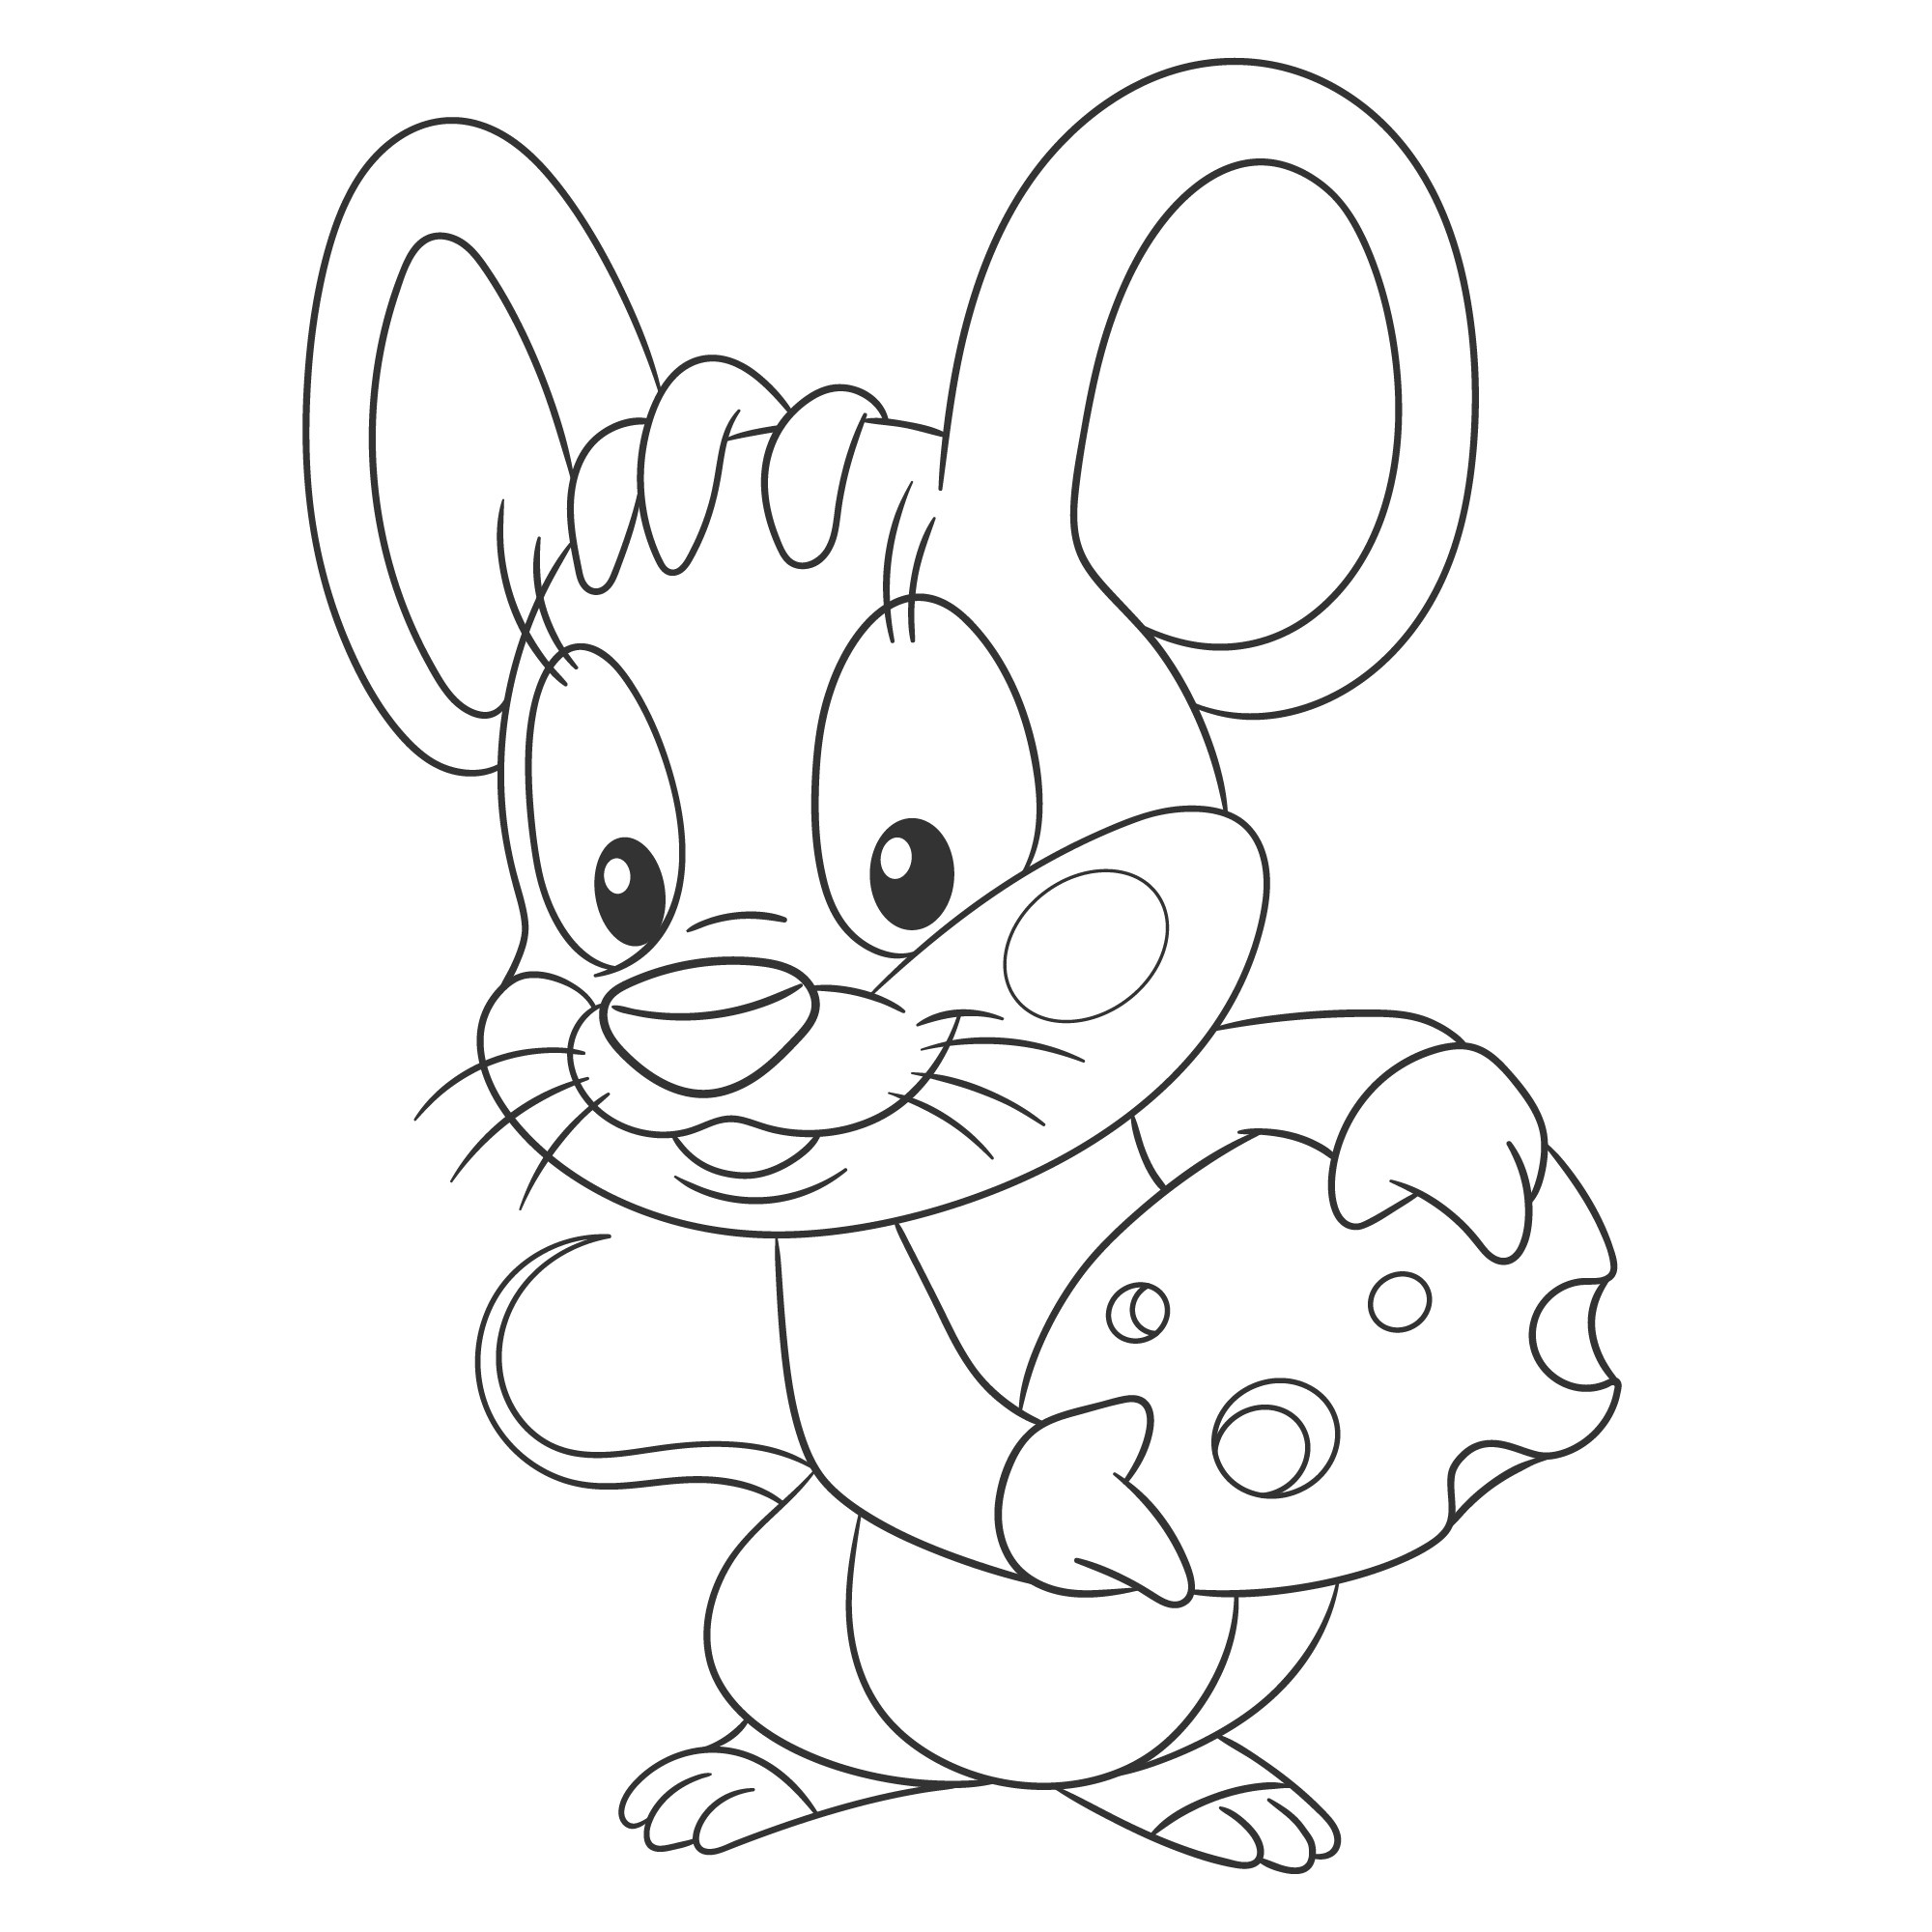 Раскраска для детей: мышка показывает кусок сыра